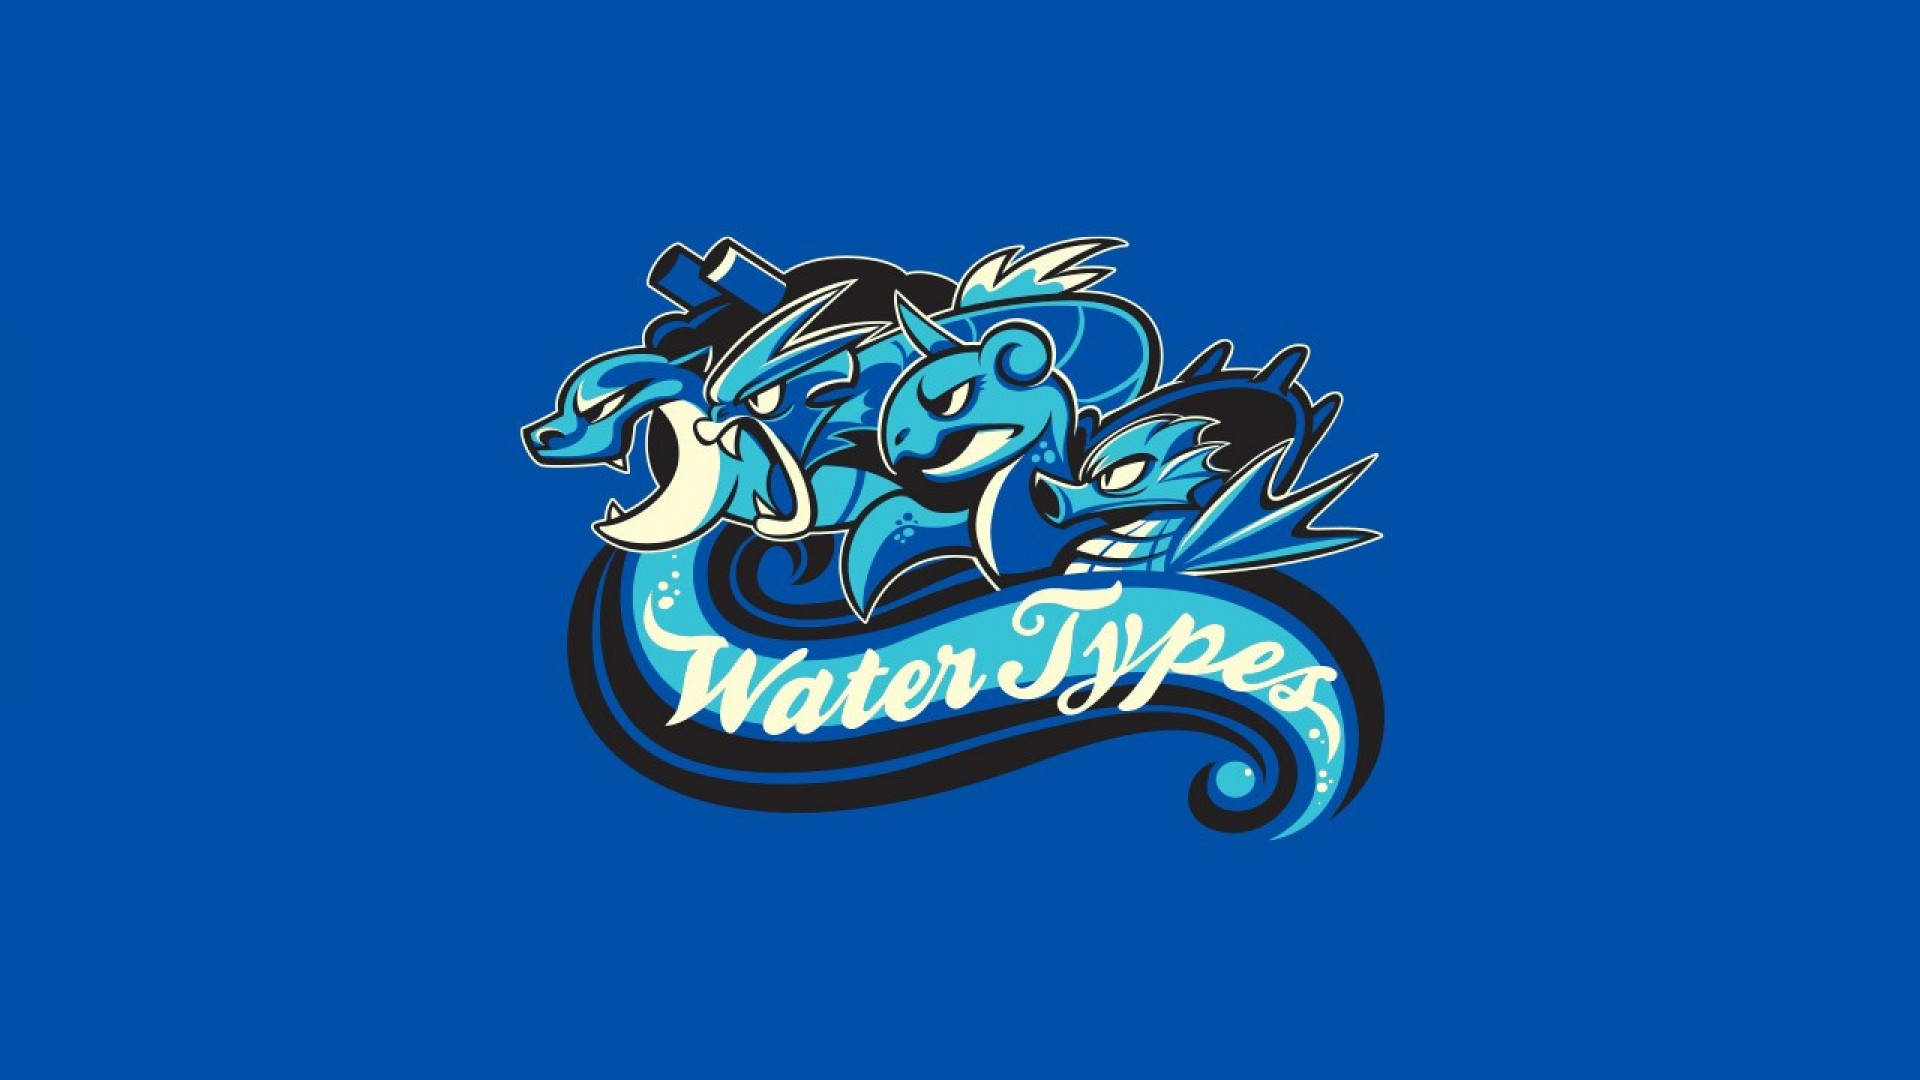 A Gyarados Bravley Swimming Through An Ocean Of Water Type Pokemon